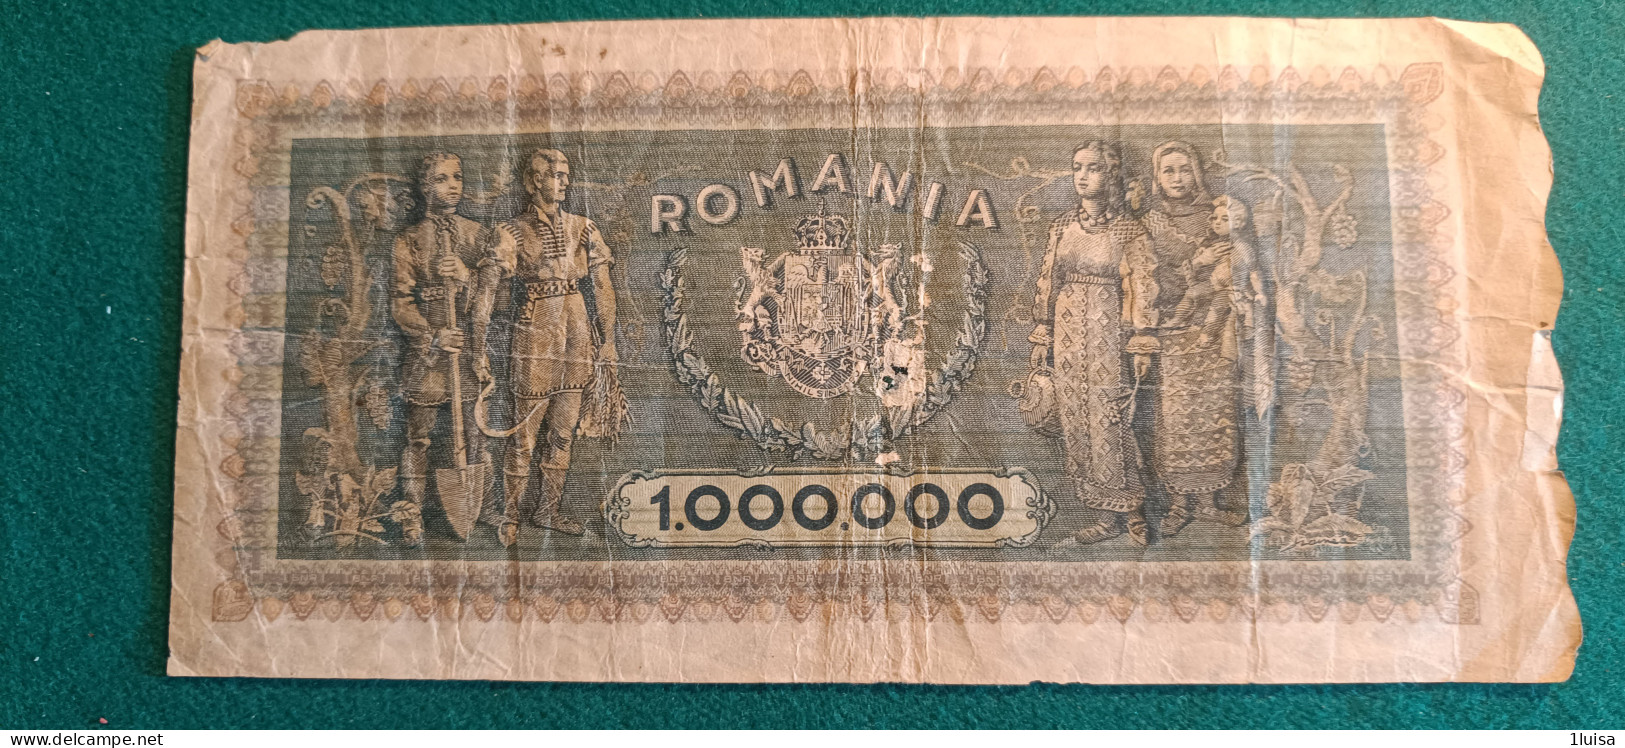 ROMANIA 1000000 LEI 1947 - Roumanie